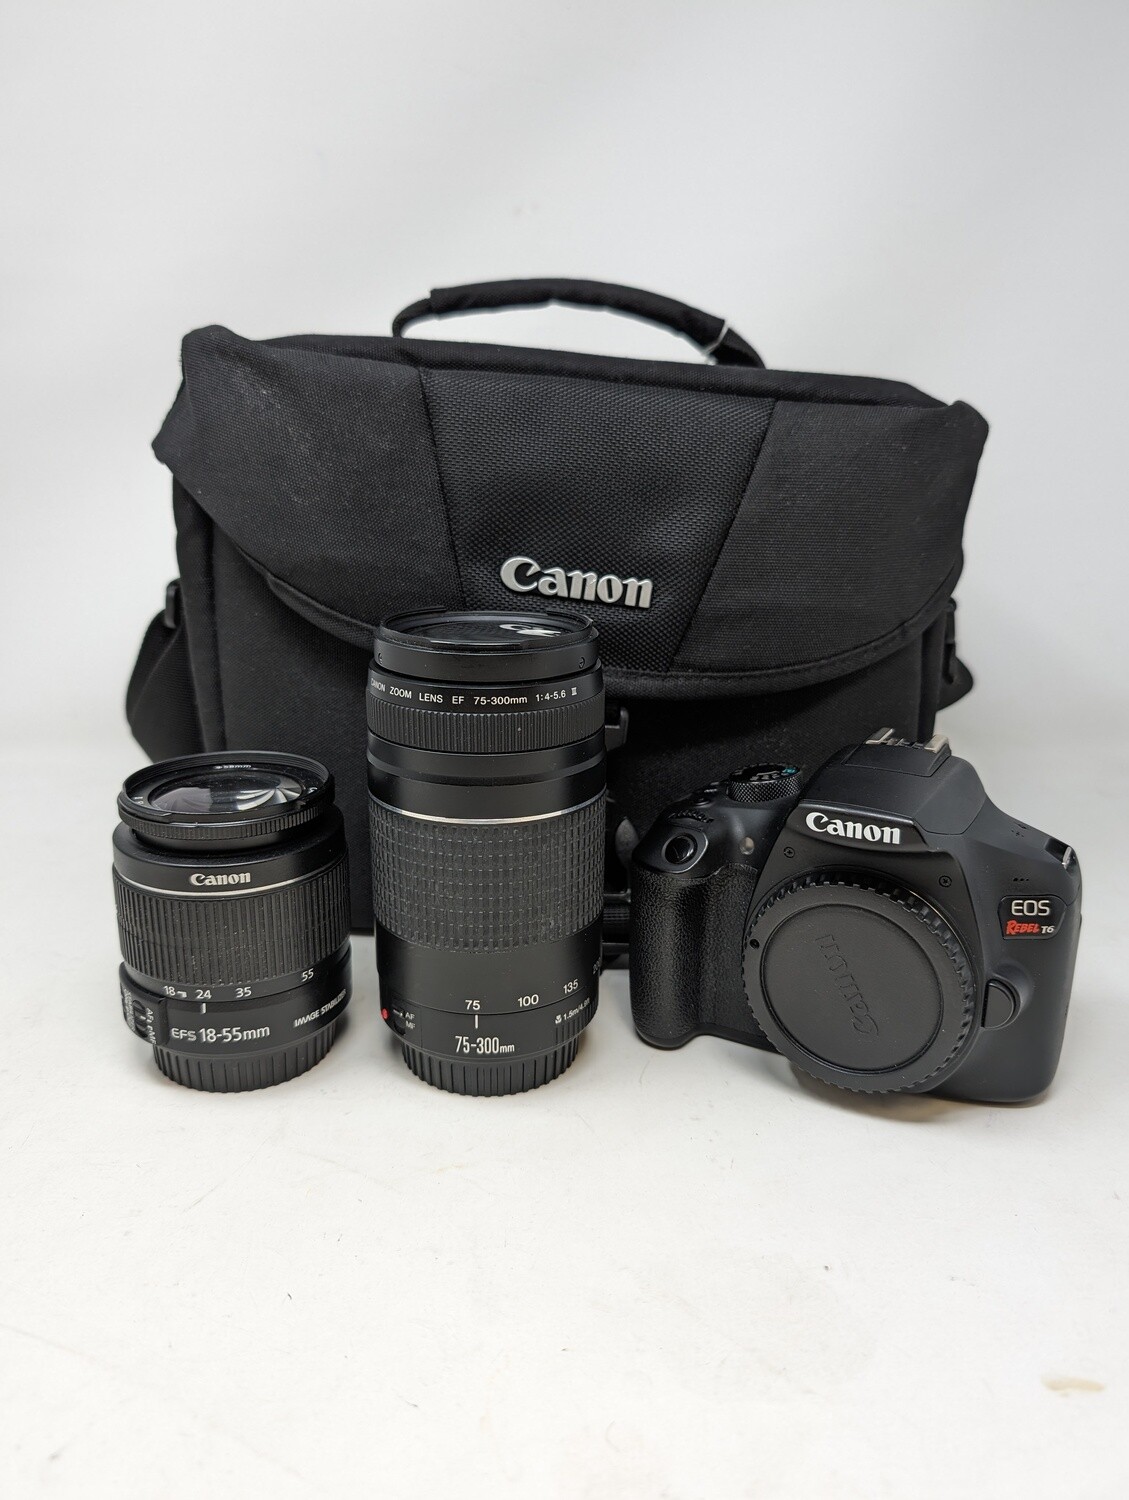 Canon Digital Camera Rebel T6 DSLR w/ accessories